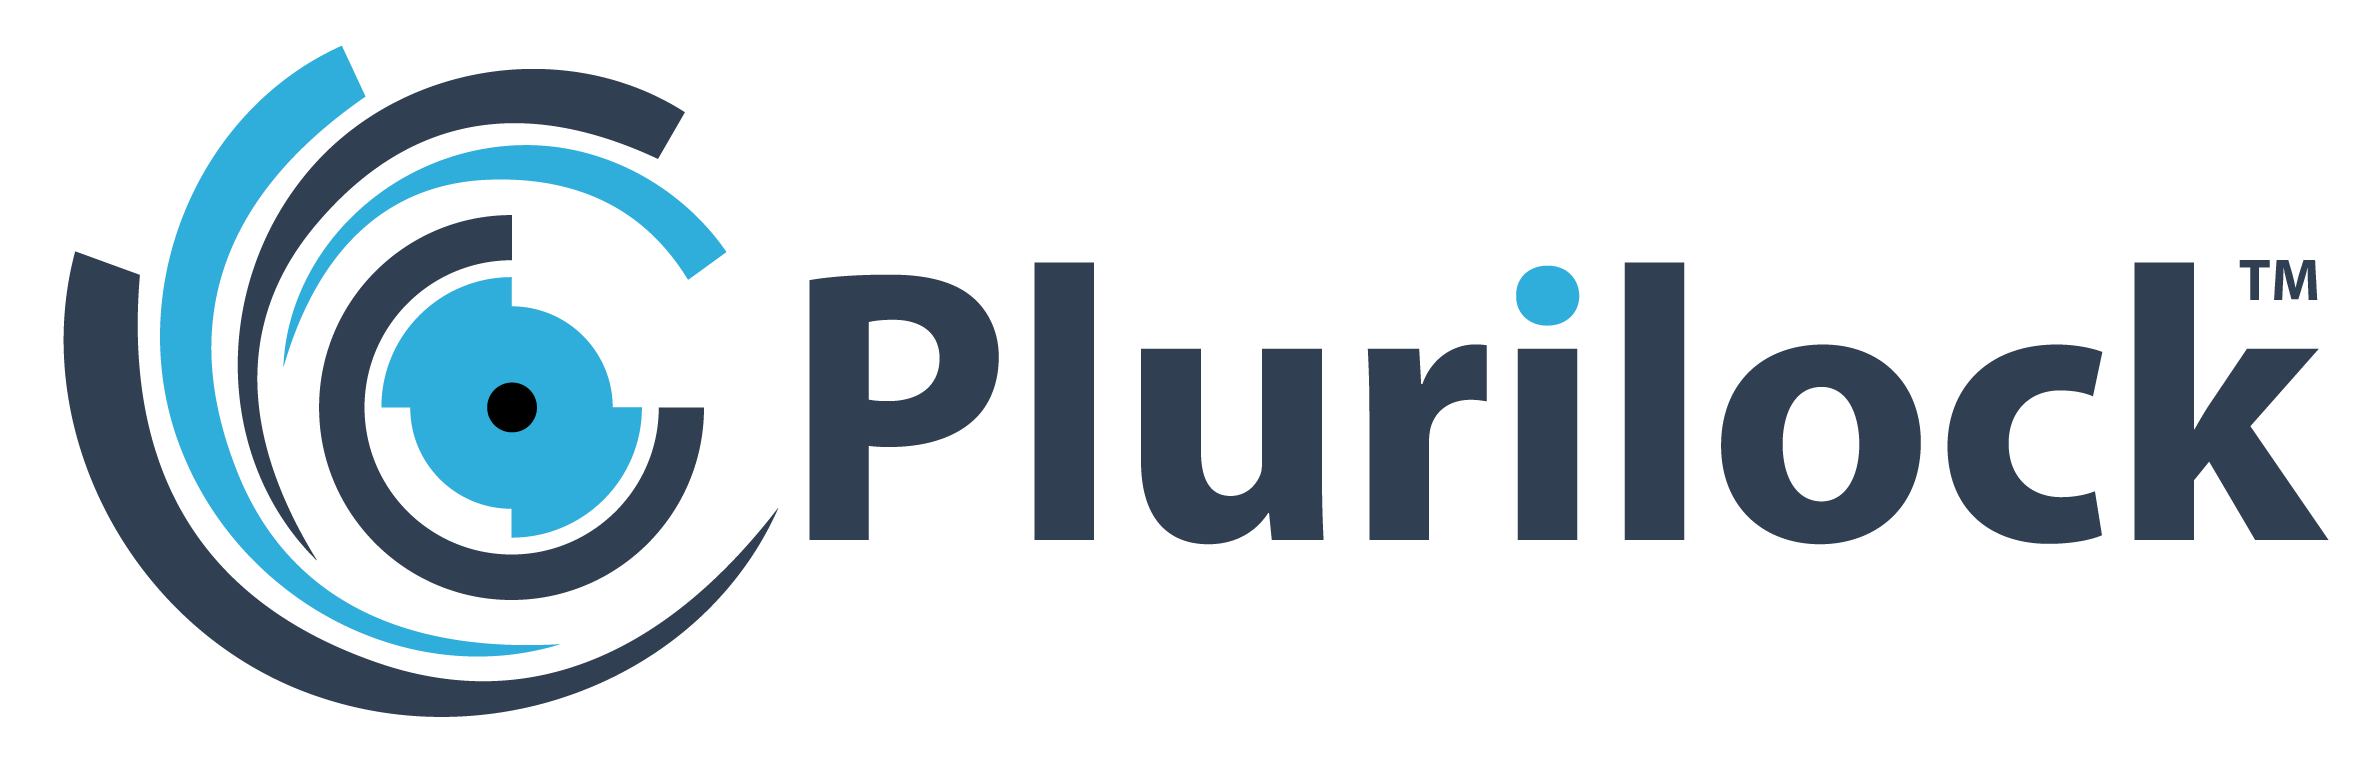 Plurilock corporate logo